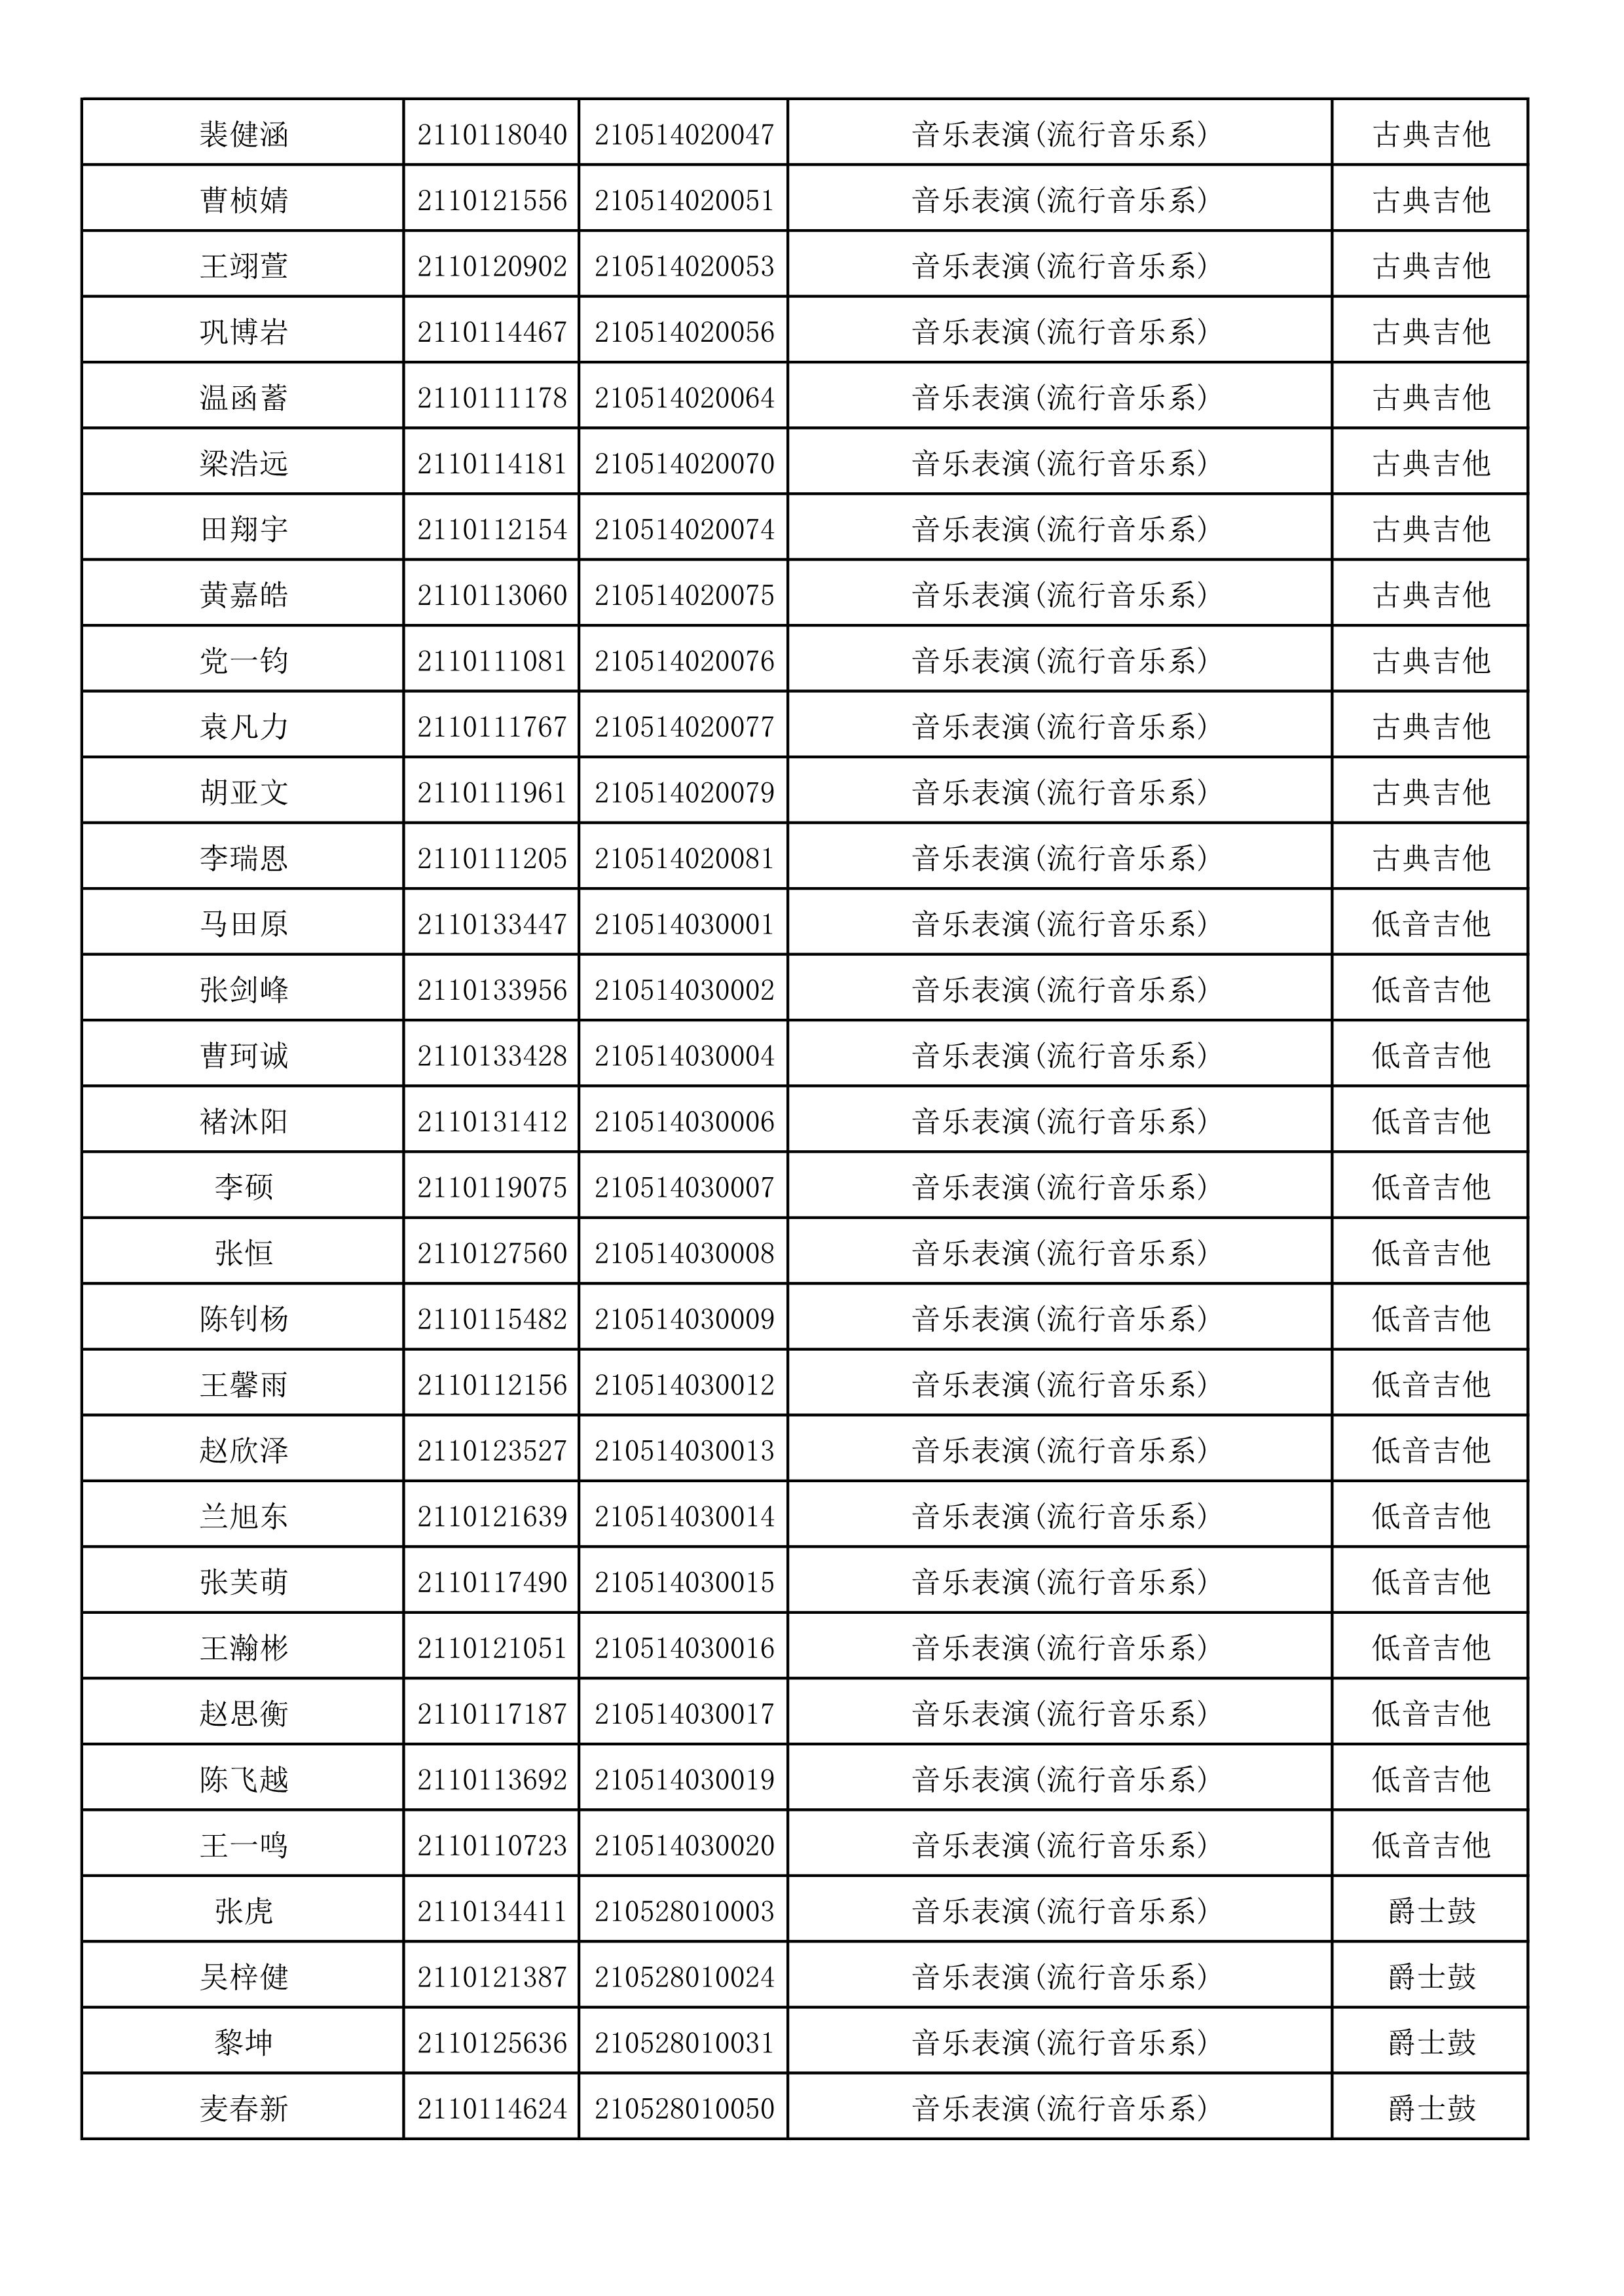 附件2：浙江音乐学院2021年本科招生专业校考初试合格考生名单_41.png